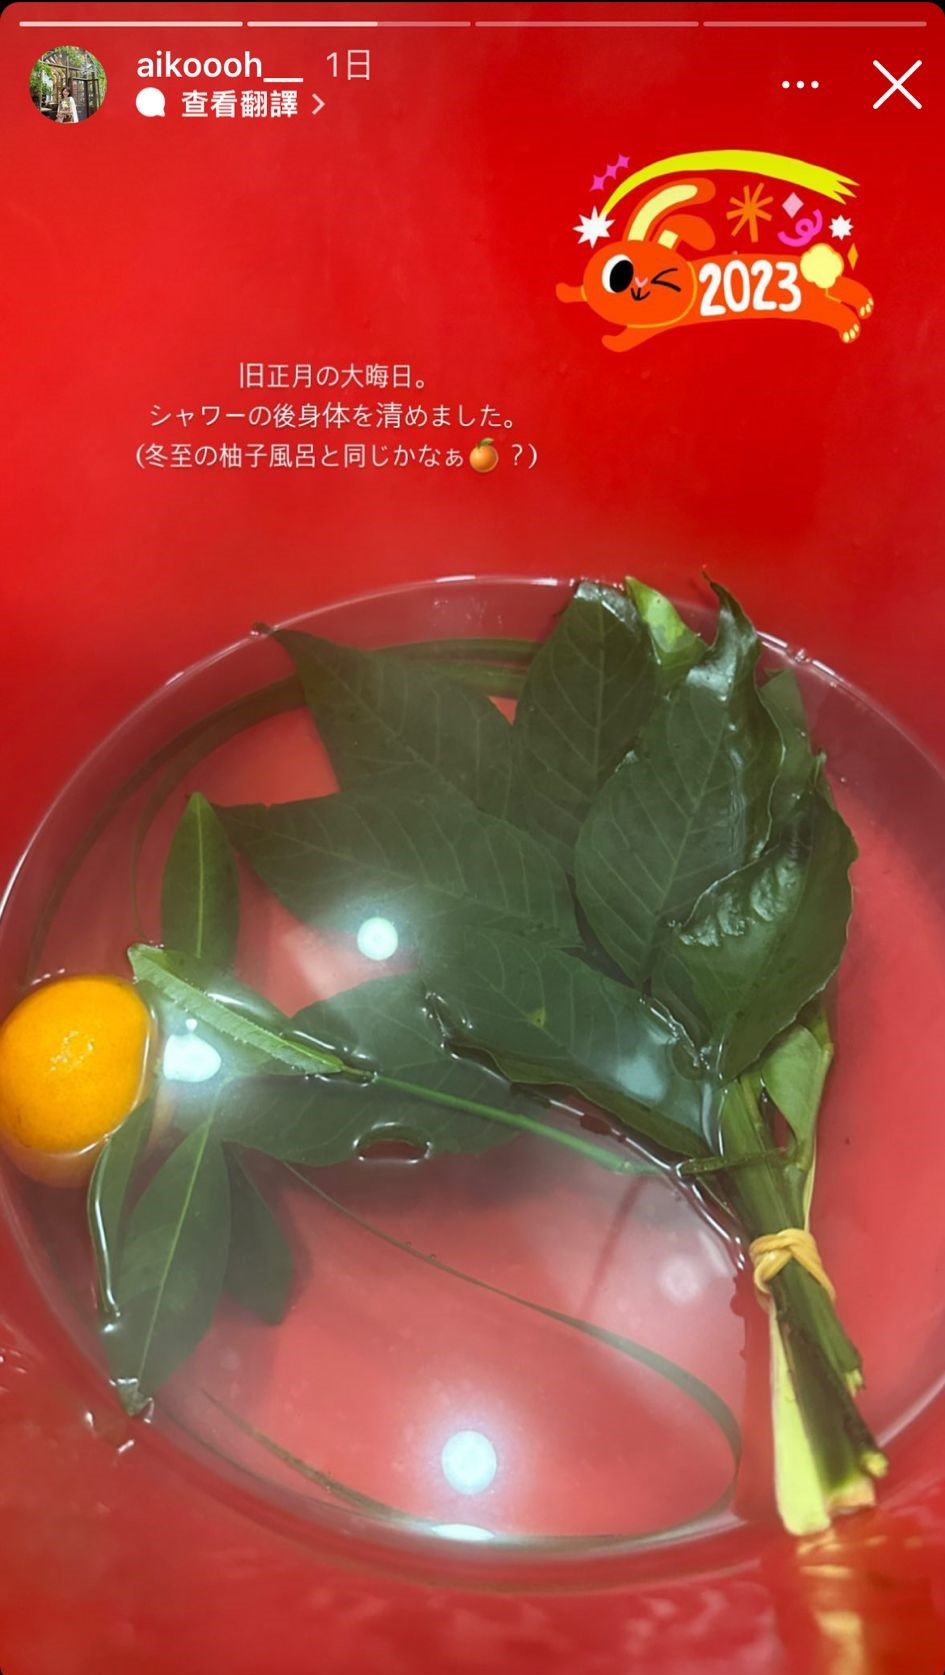 濱口愛子貼出似是碌柚葉的照片，估計是洗邋遢用。